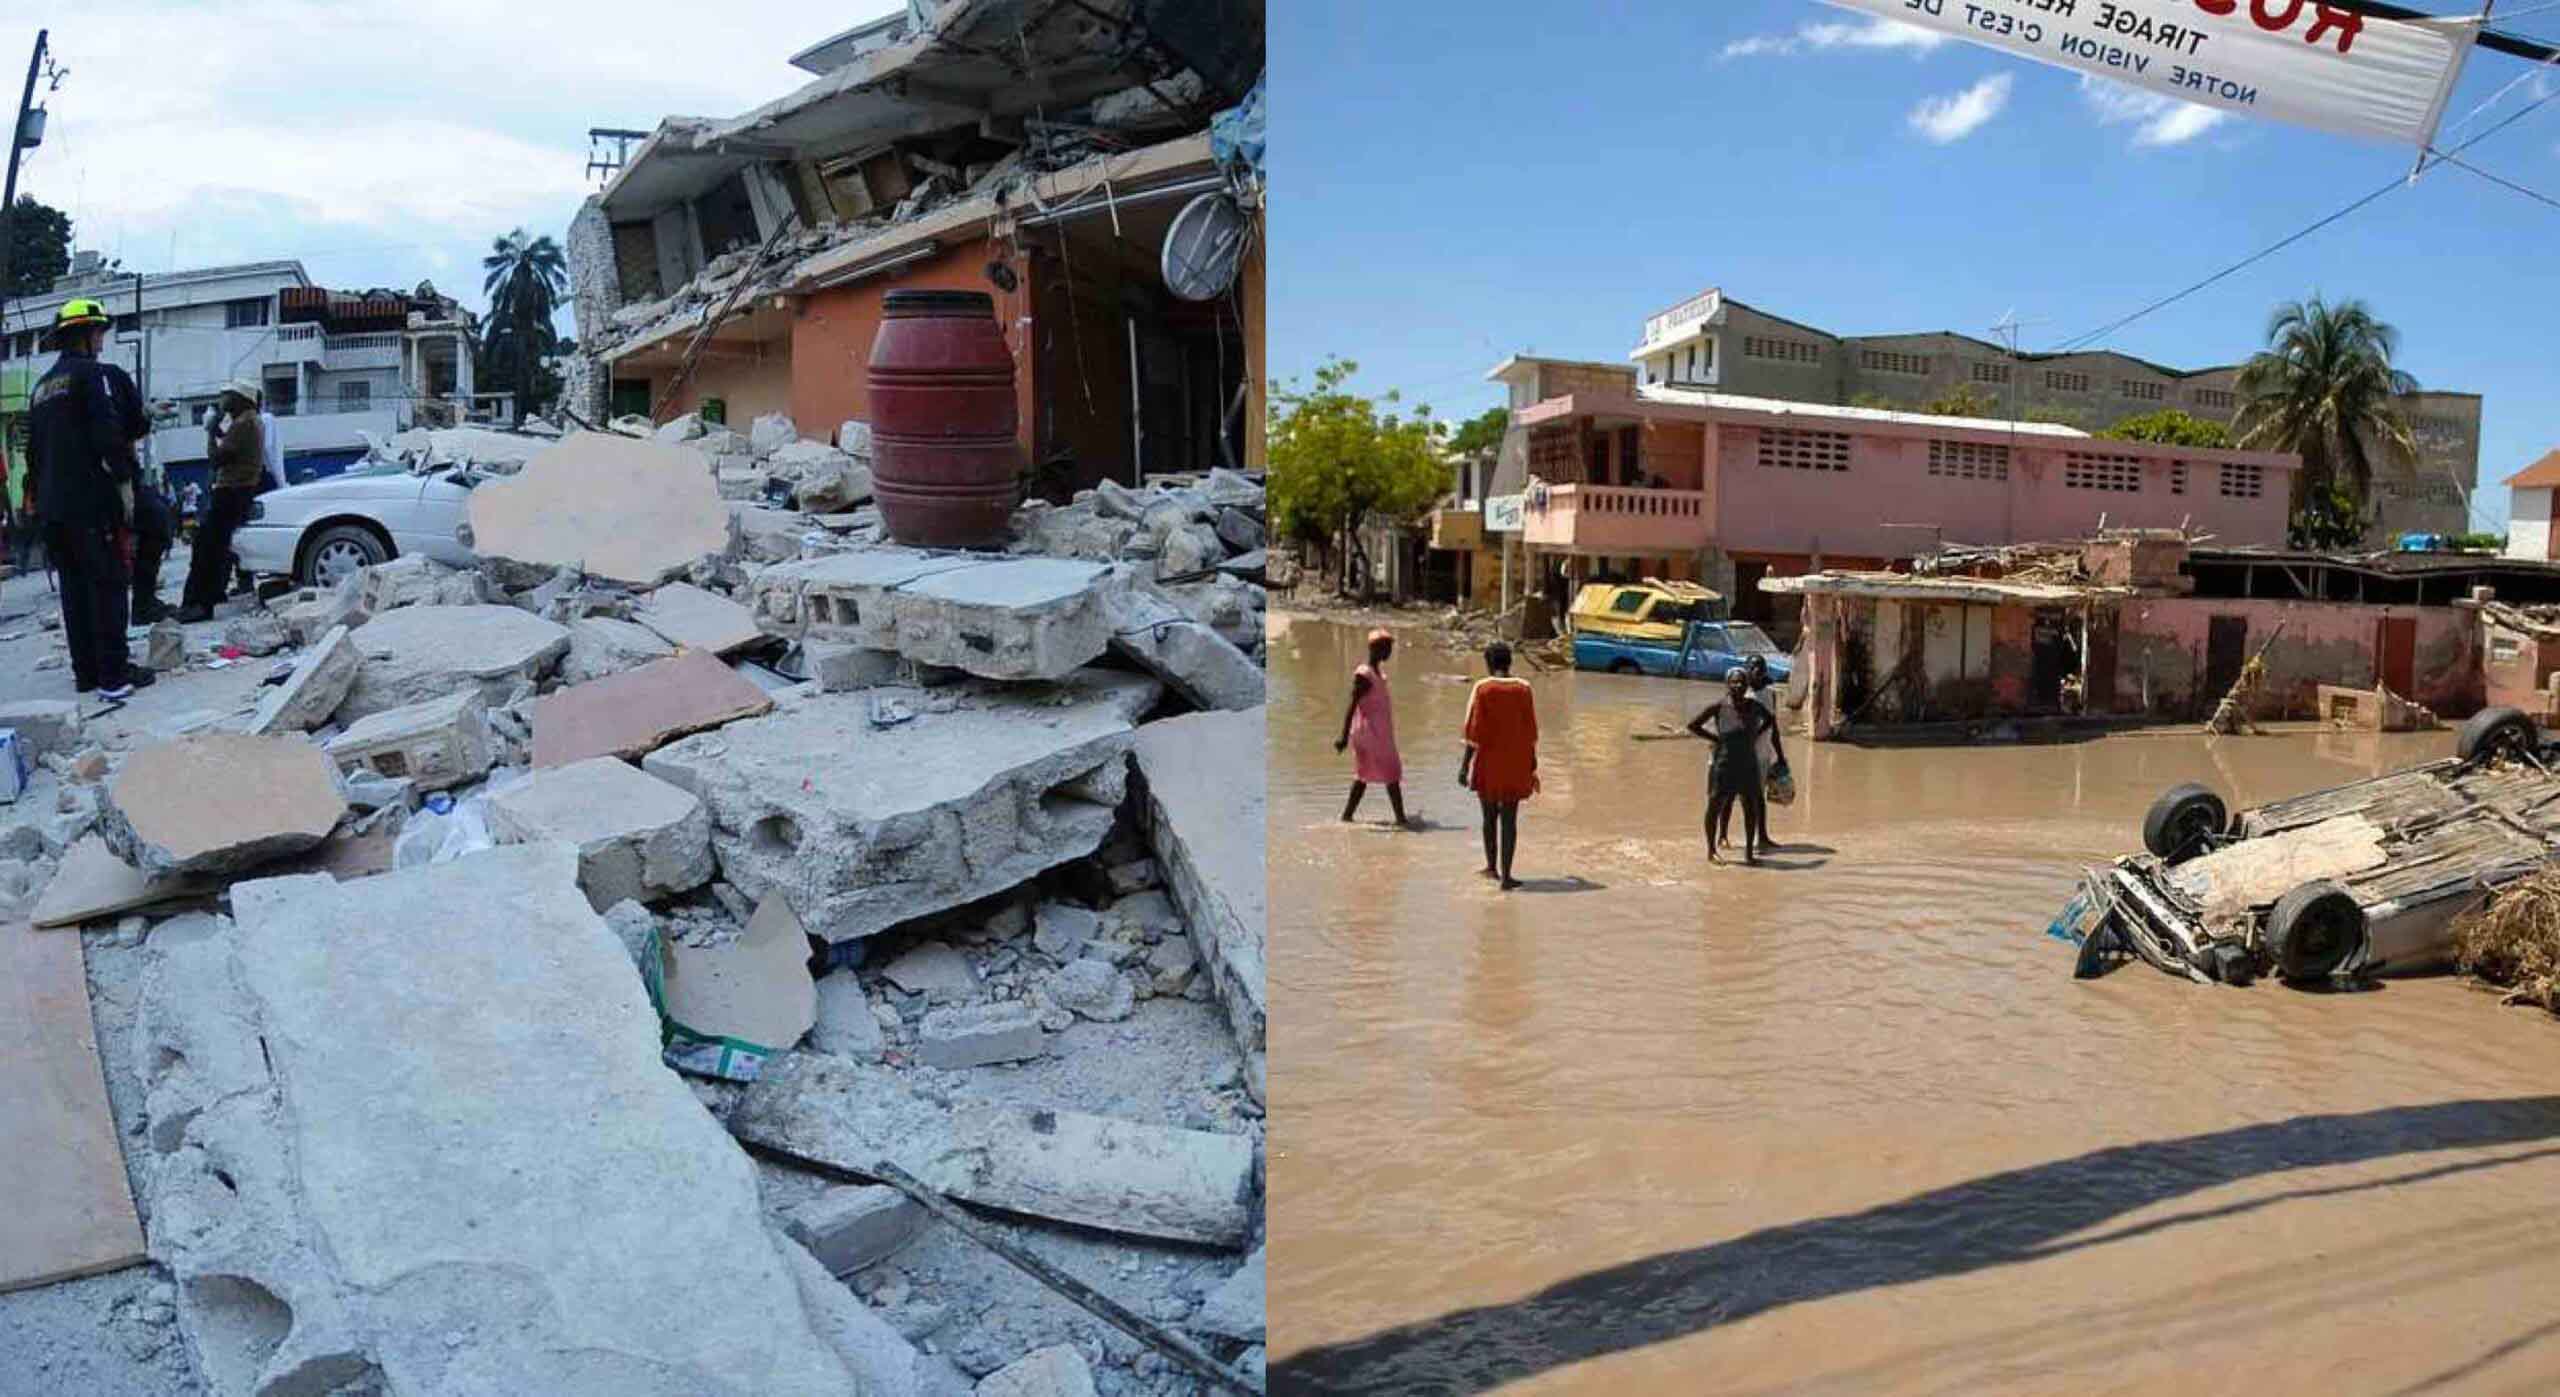 Haiti's earthquake and floods Plague the Nation